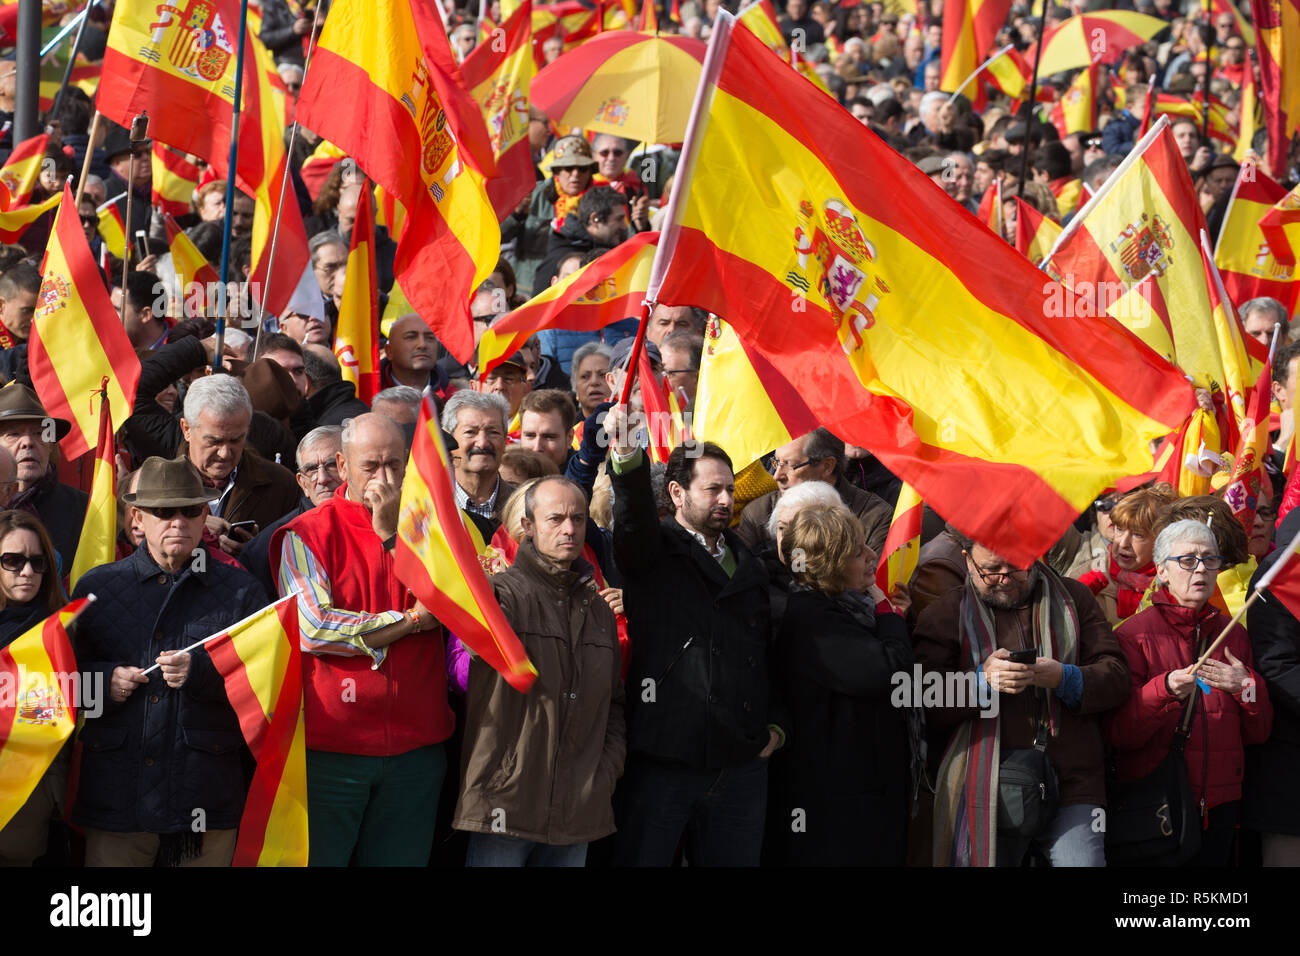 Die Demonstranten werden gesehen Holding spanische Flaggen während des Protestes. Tausende von Menschen mit zahlreichen Fahnen Spanien beteiligen sich an der Demonstration in Madrid von Denaes und die Spanien Viva Stiftung zur Verteidigung der Institutionen, die Einheit Spaniens und gegen die Straflosigkeit der coup Plotters. Stockfoto